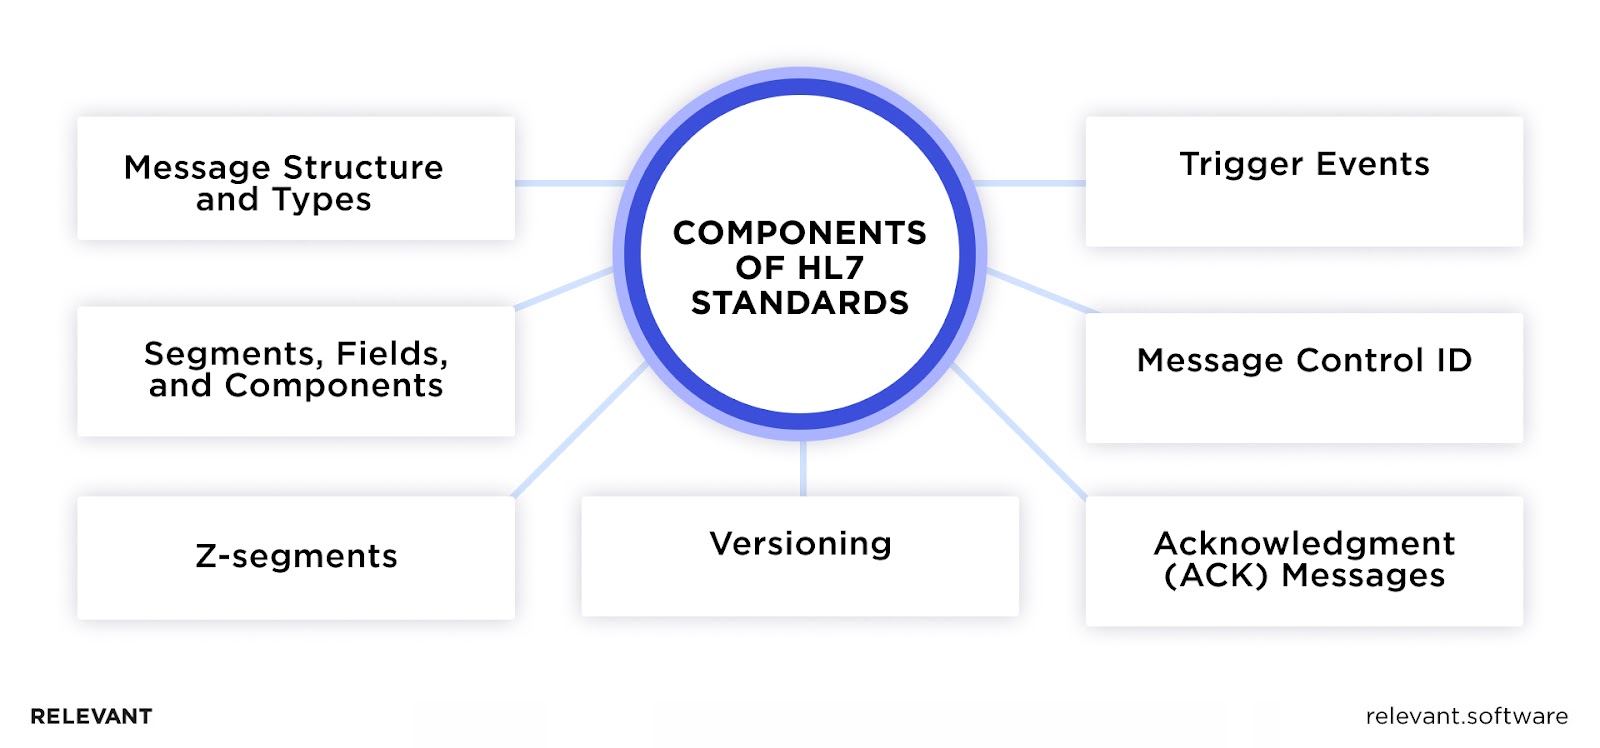 Components of HL7 Standards